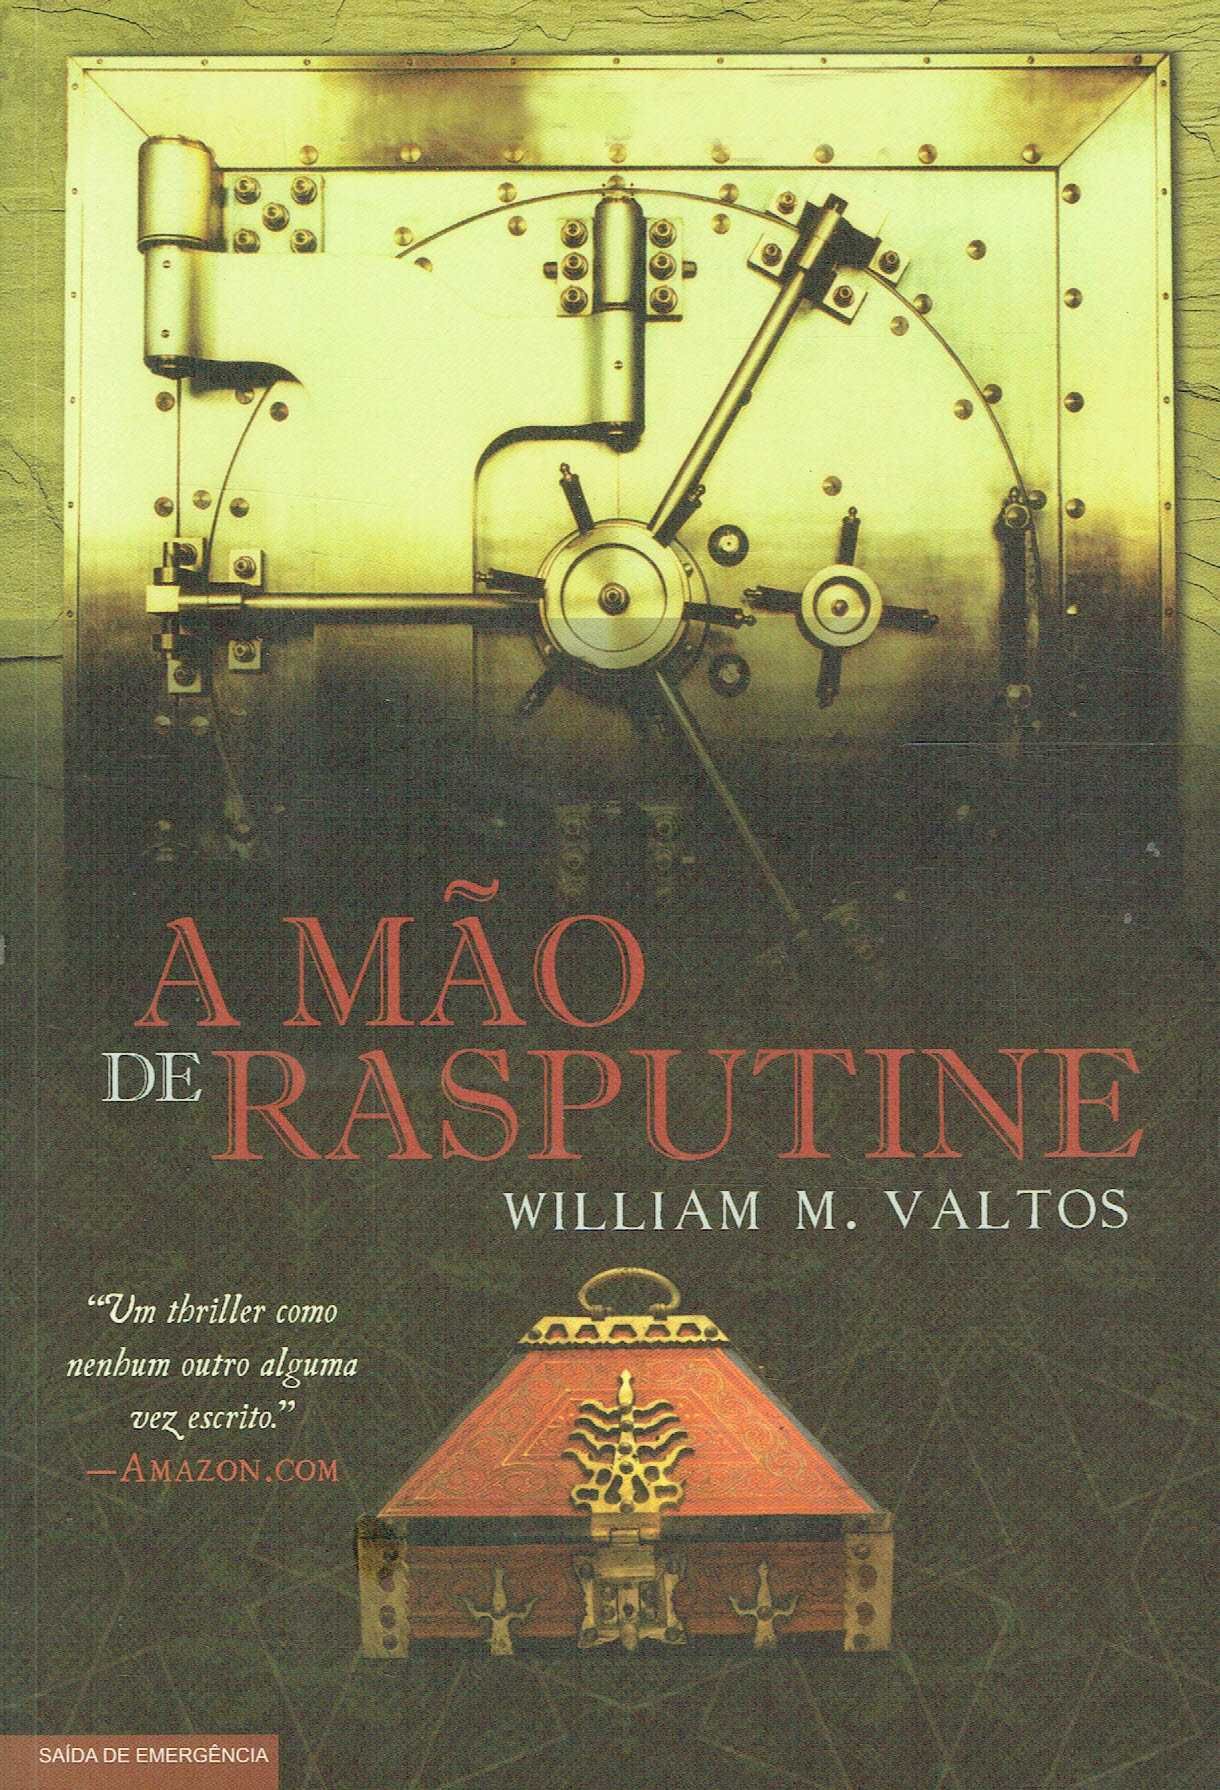 14717

A Mão de Rasputine
de William M. Valtos